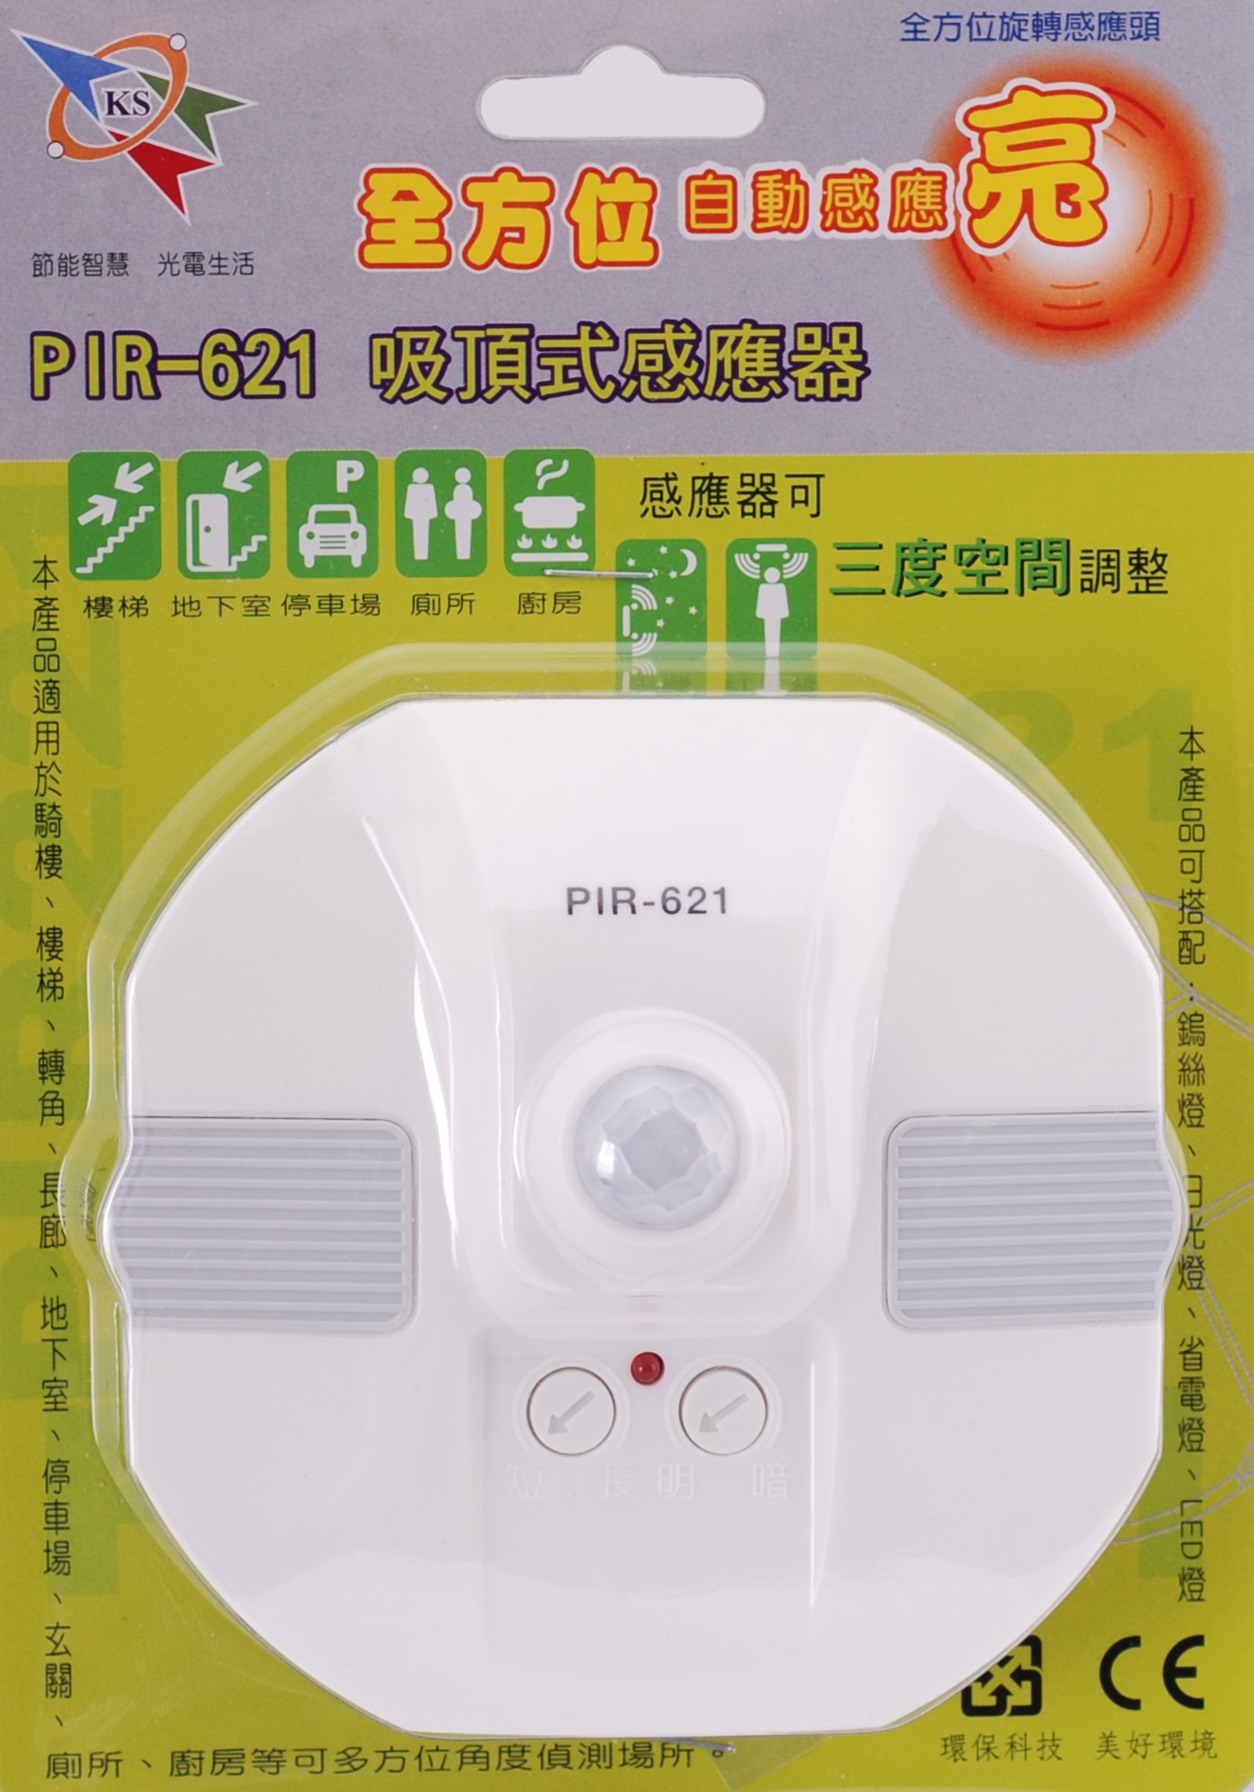 PIR-621 Ceiling Sensor